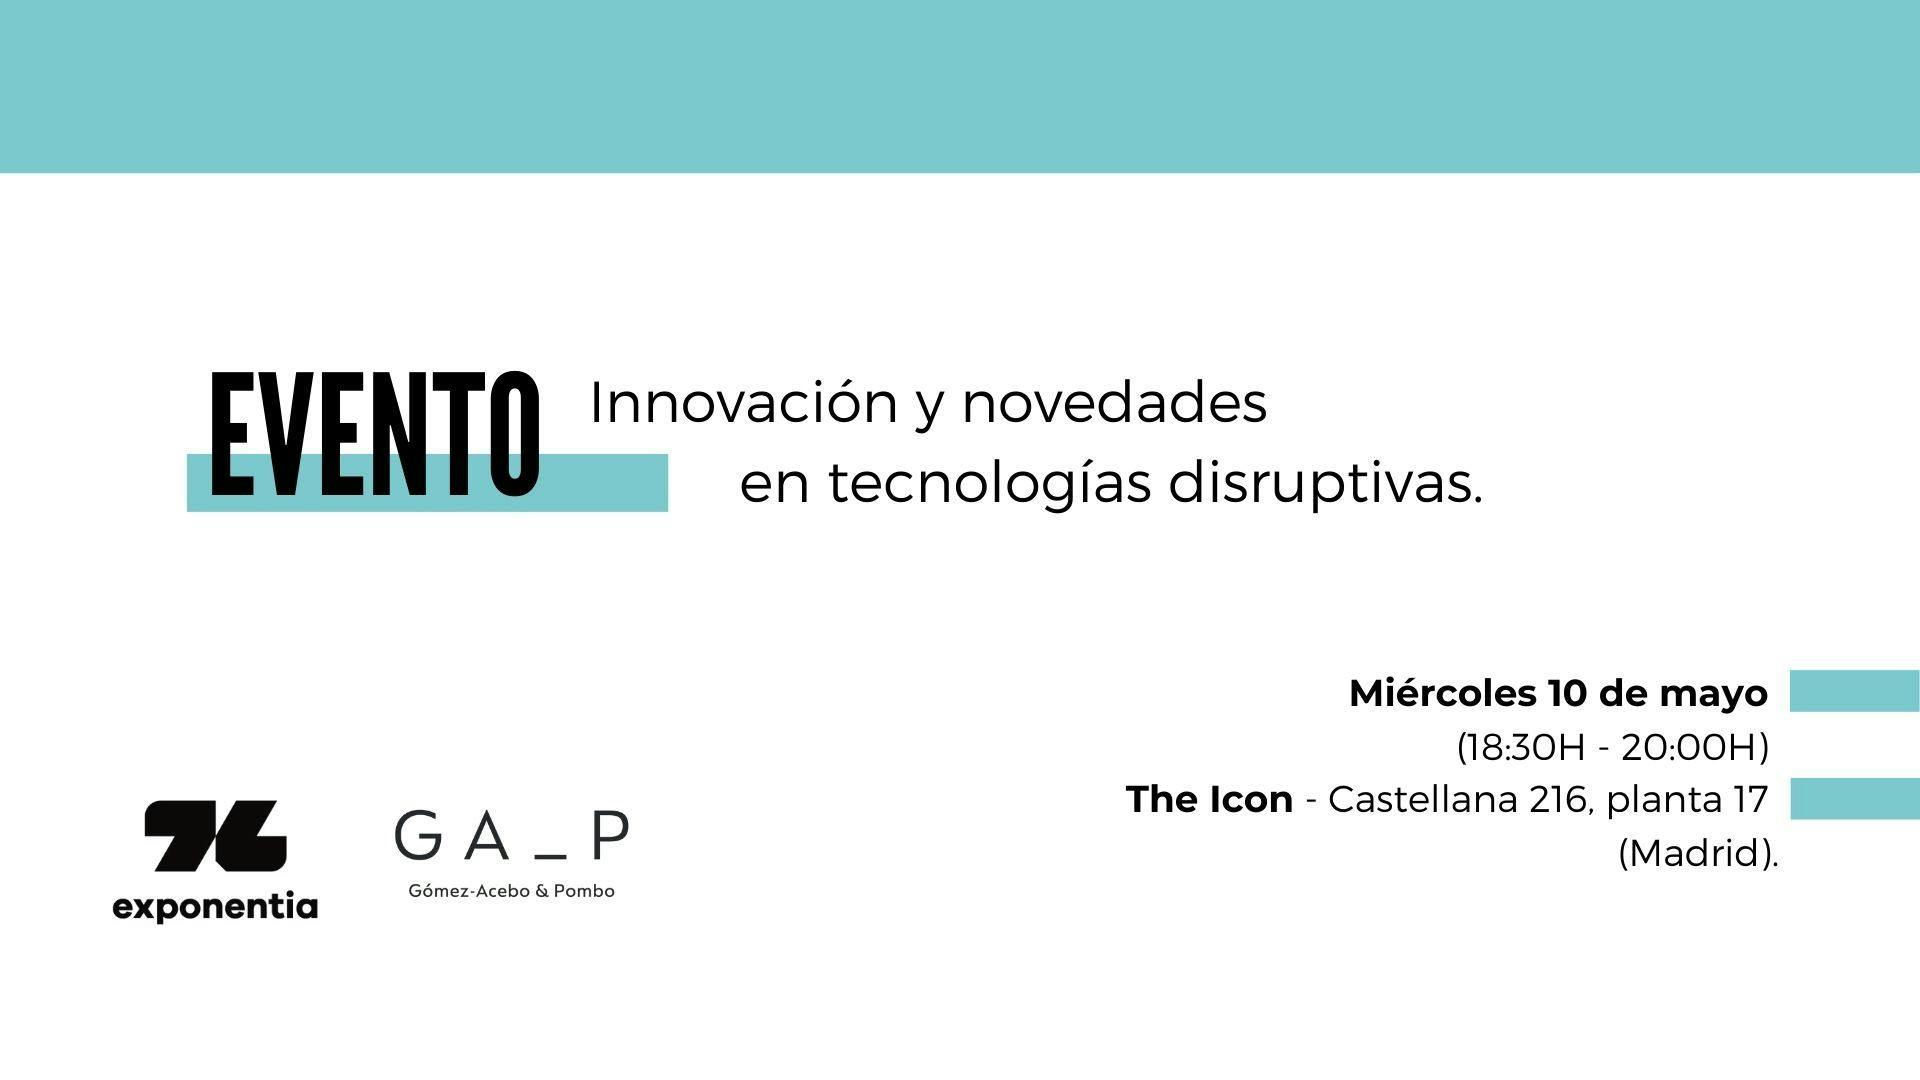 Gómez-Acebo & Pombo y Exponentia organizan una jornada de innovación y novedades en tecnologías disruptivas.